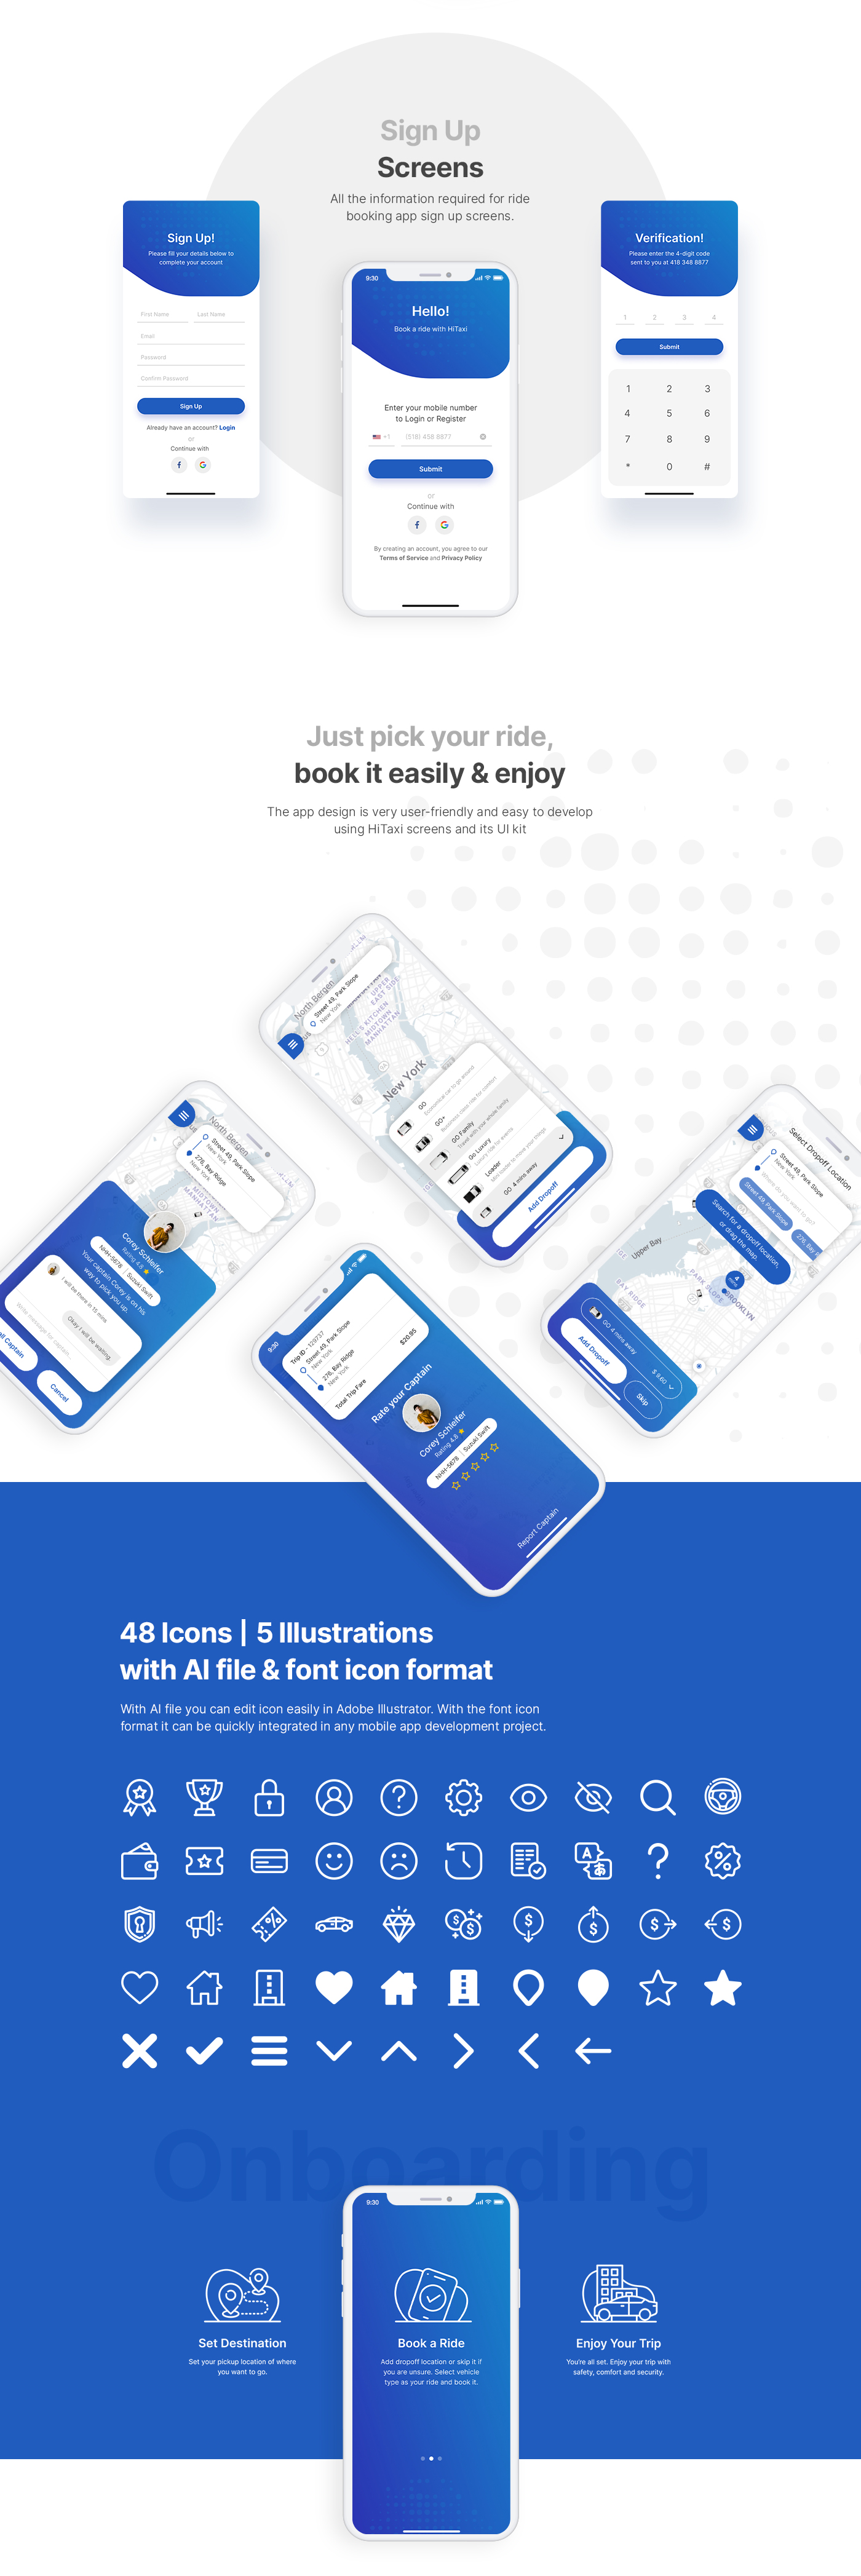 HiTaxi - Adobe XD UI Kit for Mobile App - 2